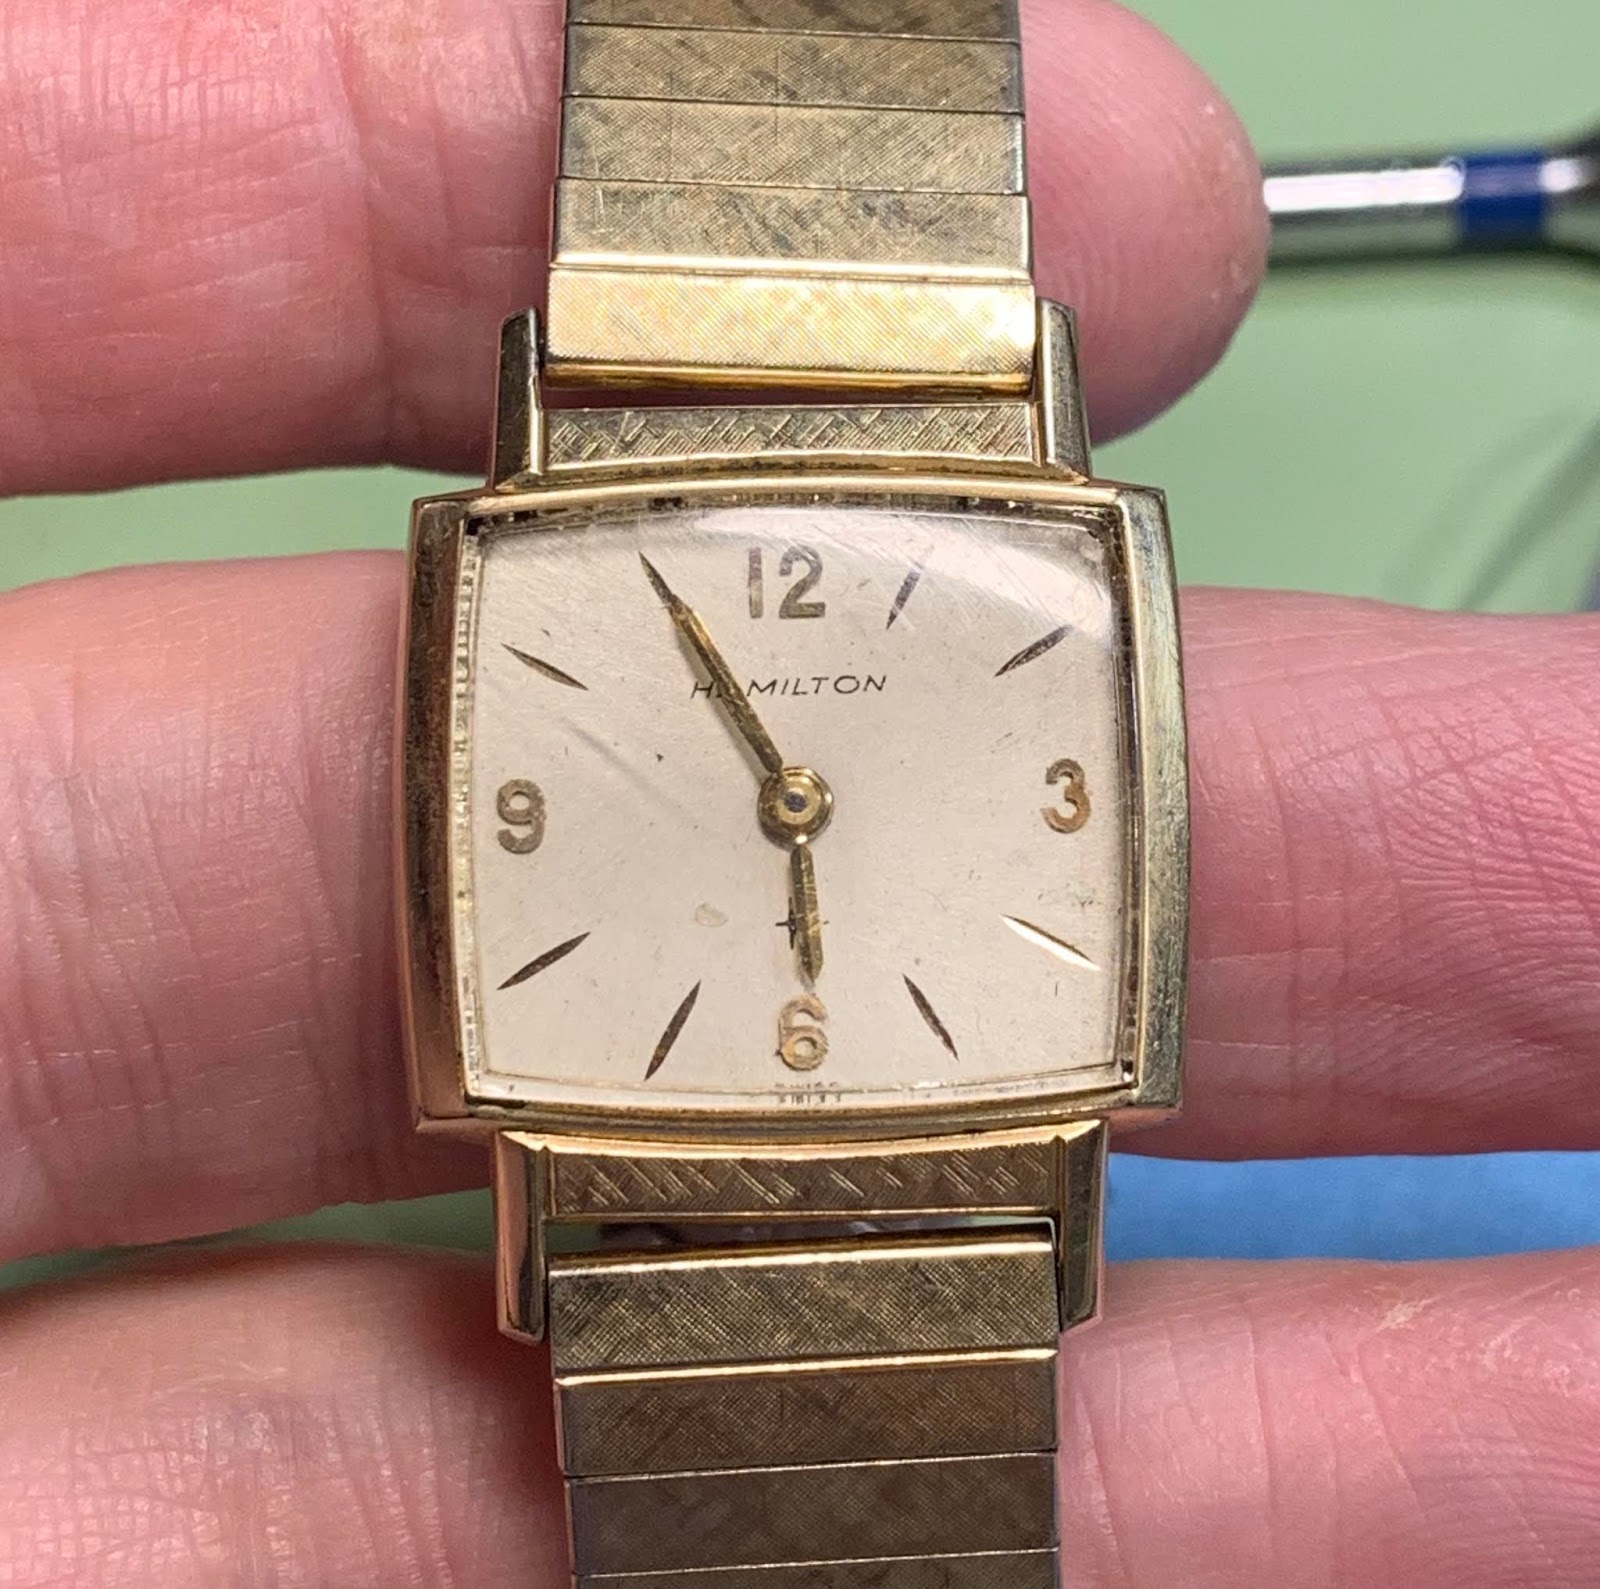 Vintage Hamilton Watch Restoration: 1965 Vincent